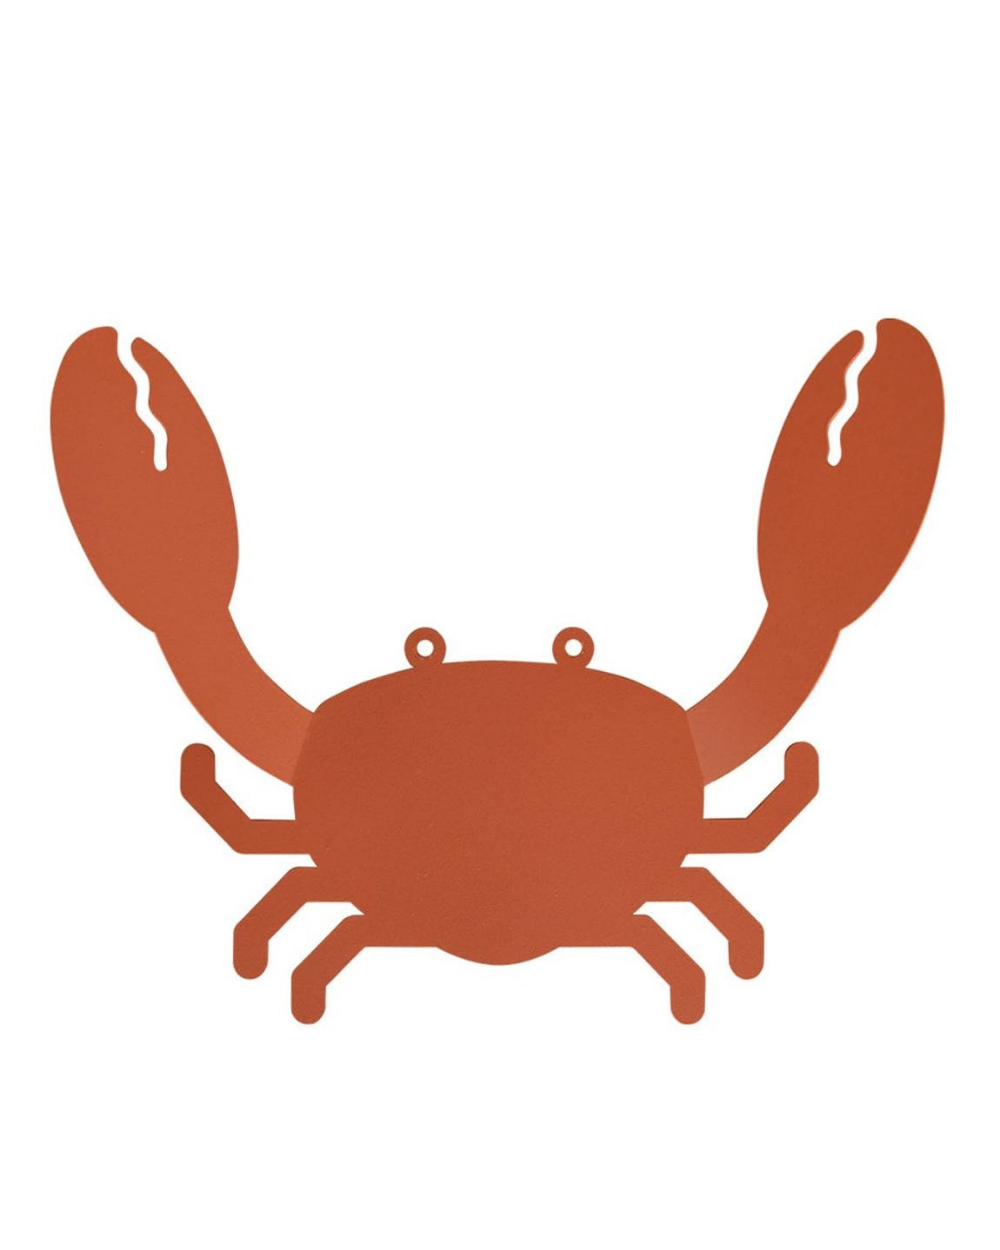 Cuier crab mamaboutique.ro imagine 2022 protejamcopilaria.ro